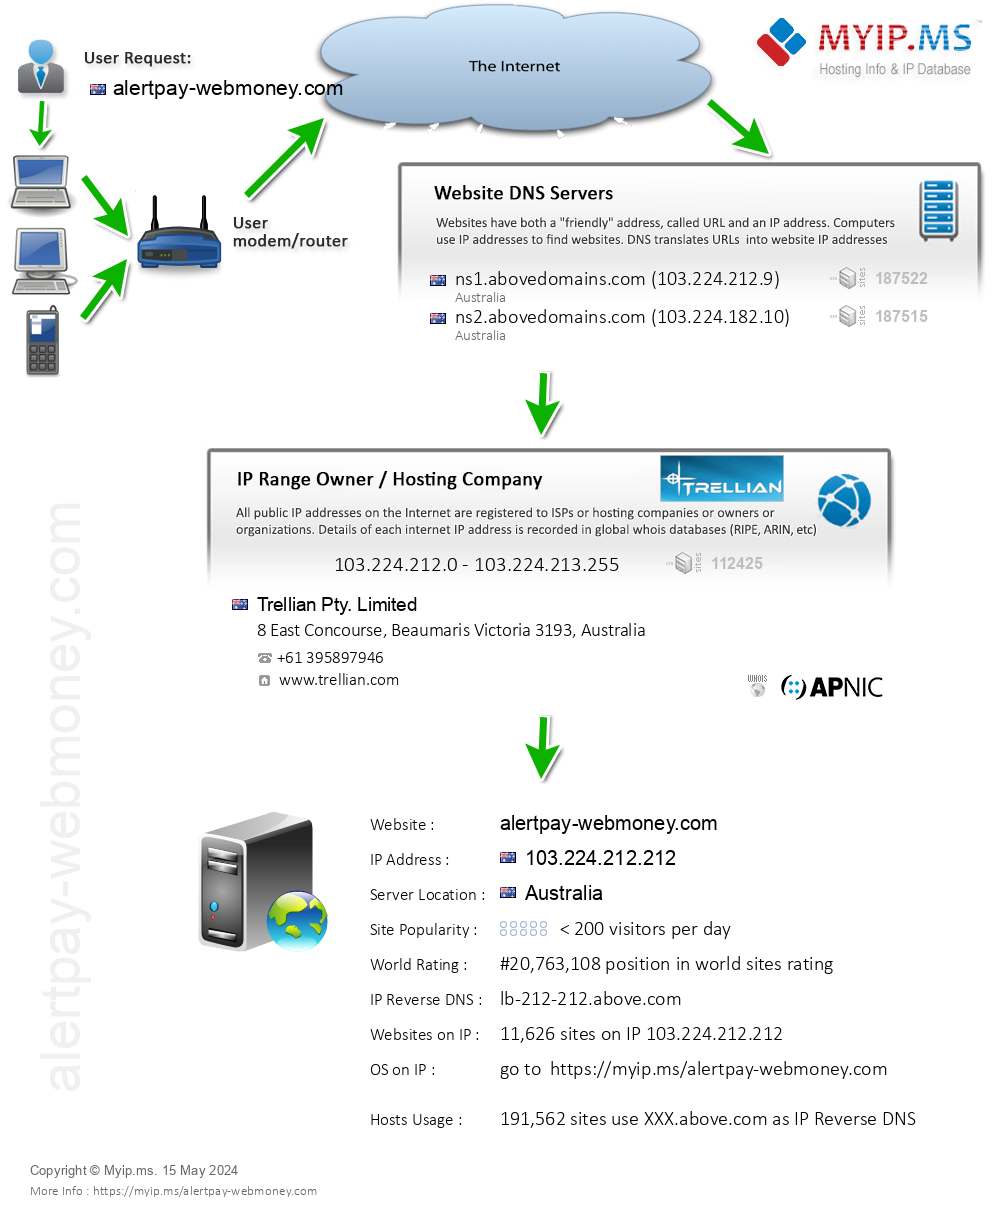 Alertpay-webmoney.com - Website Hosting Visual IP Diagram